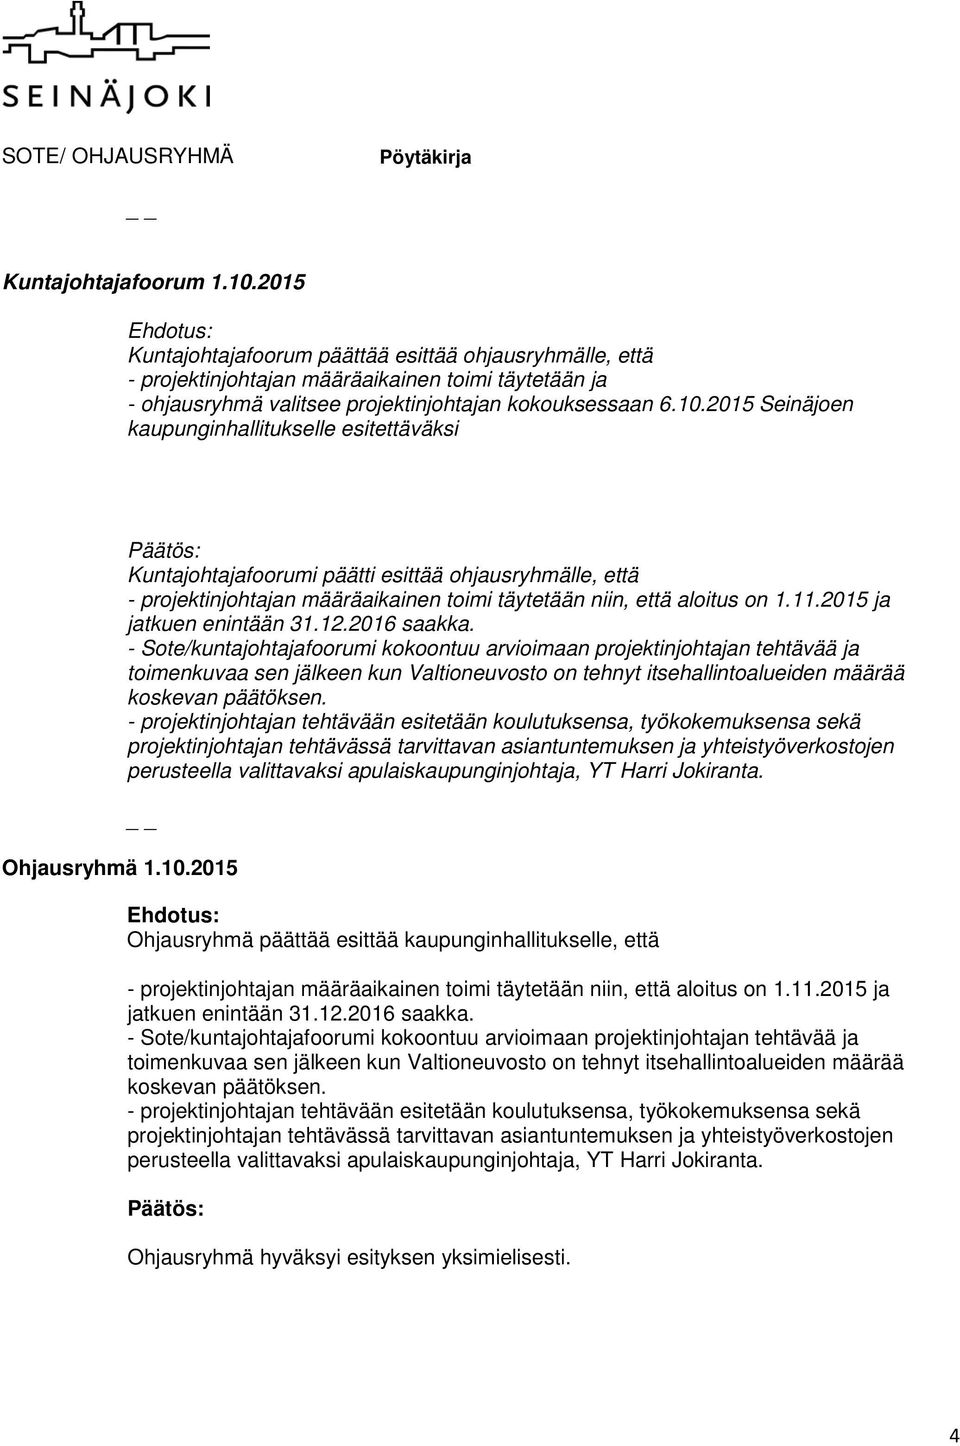 2015 Seinäjoen kaupunginhallitukselle esitettäväksi Kuntajohtajafoorumi päätti esittää ohjausryhmälle, että - projektinjohtajan määräaikainen toimi täytetään niin, että aloitus on 1.11.